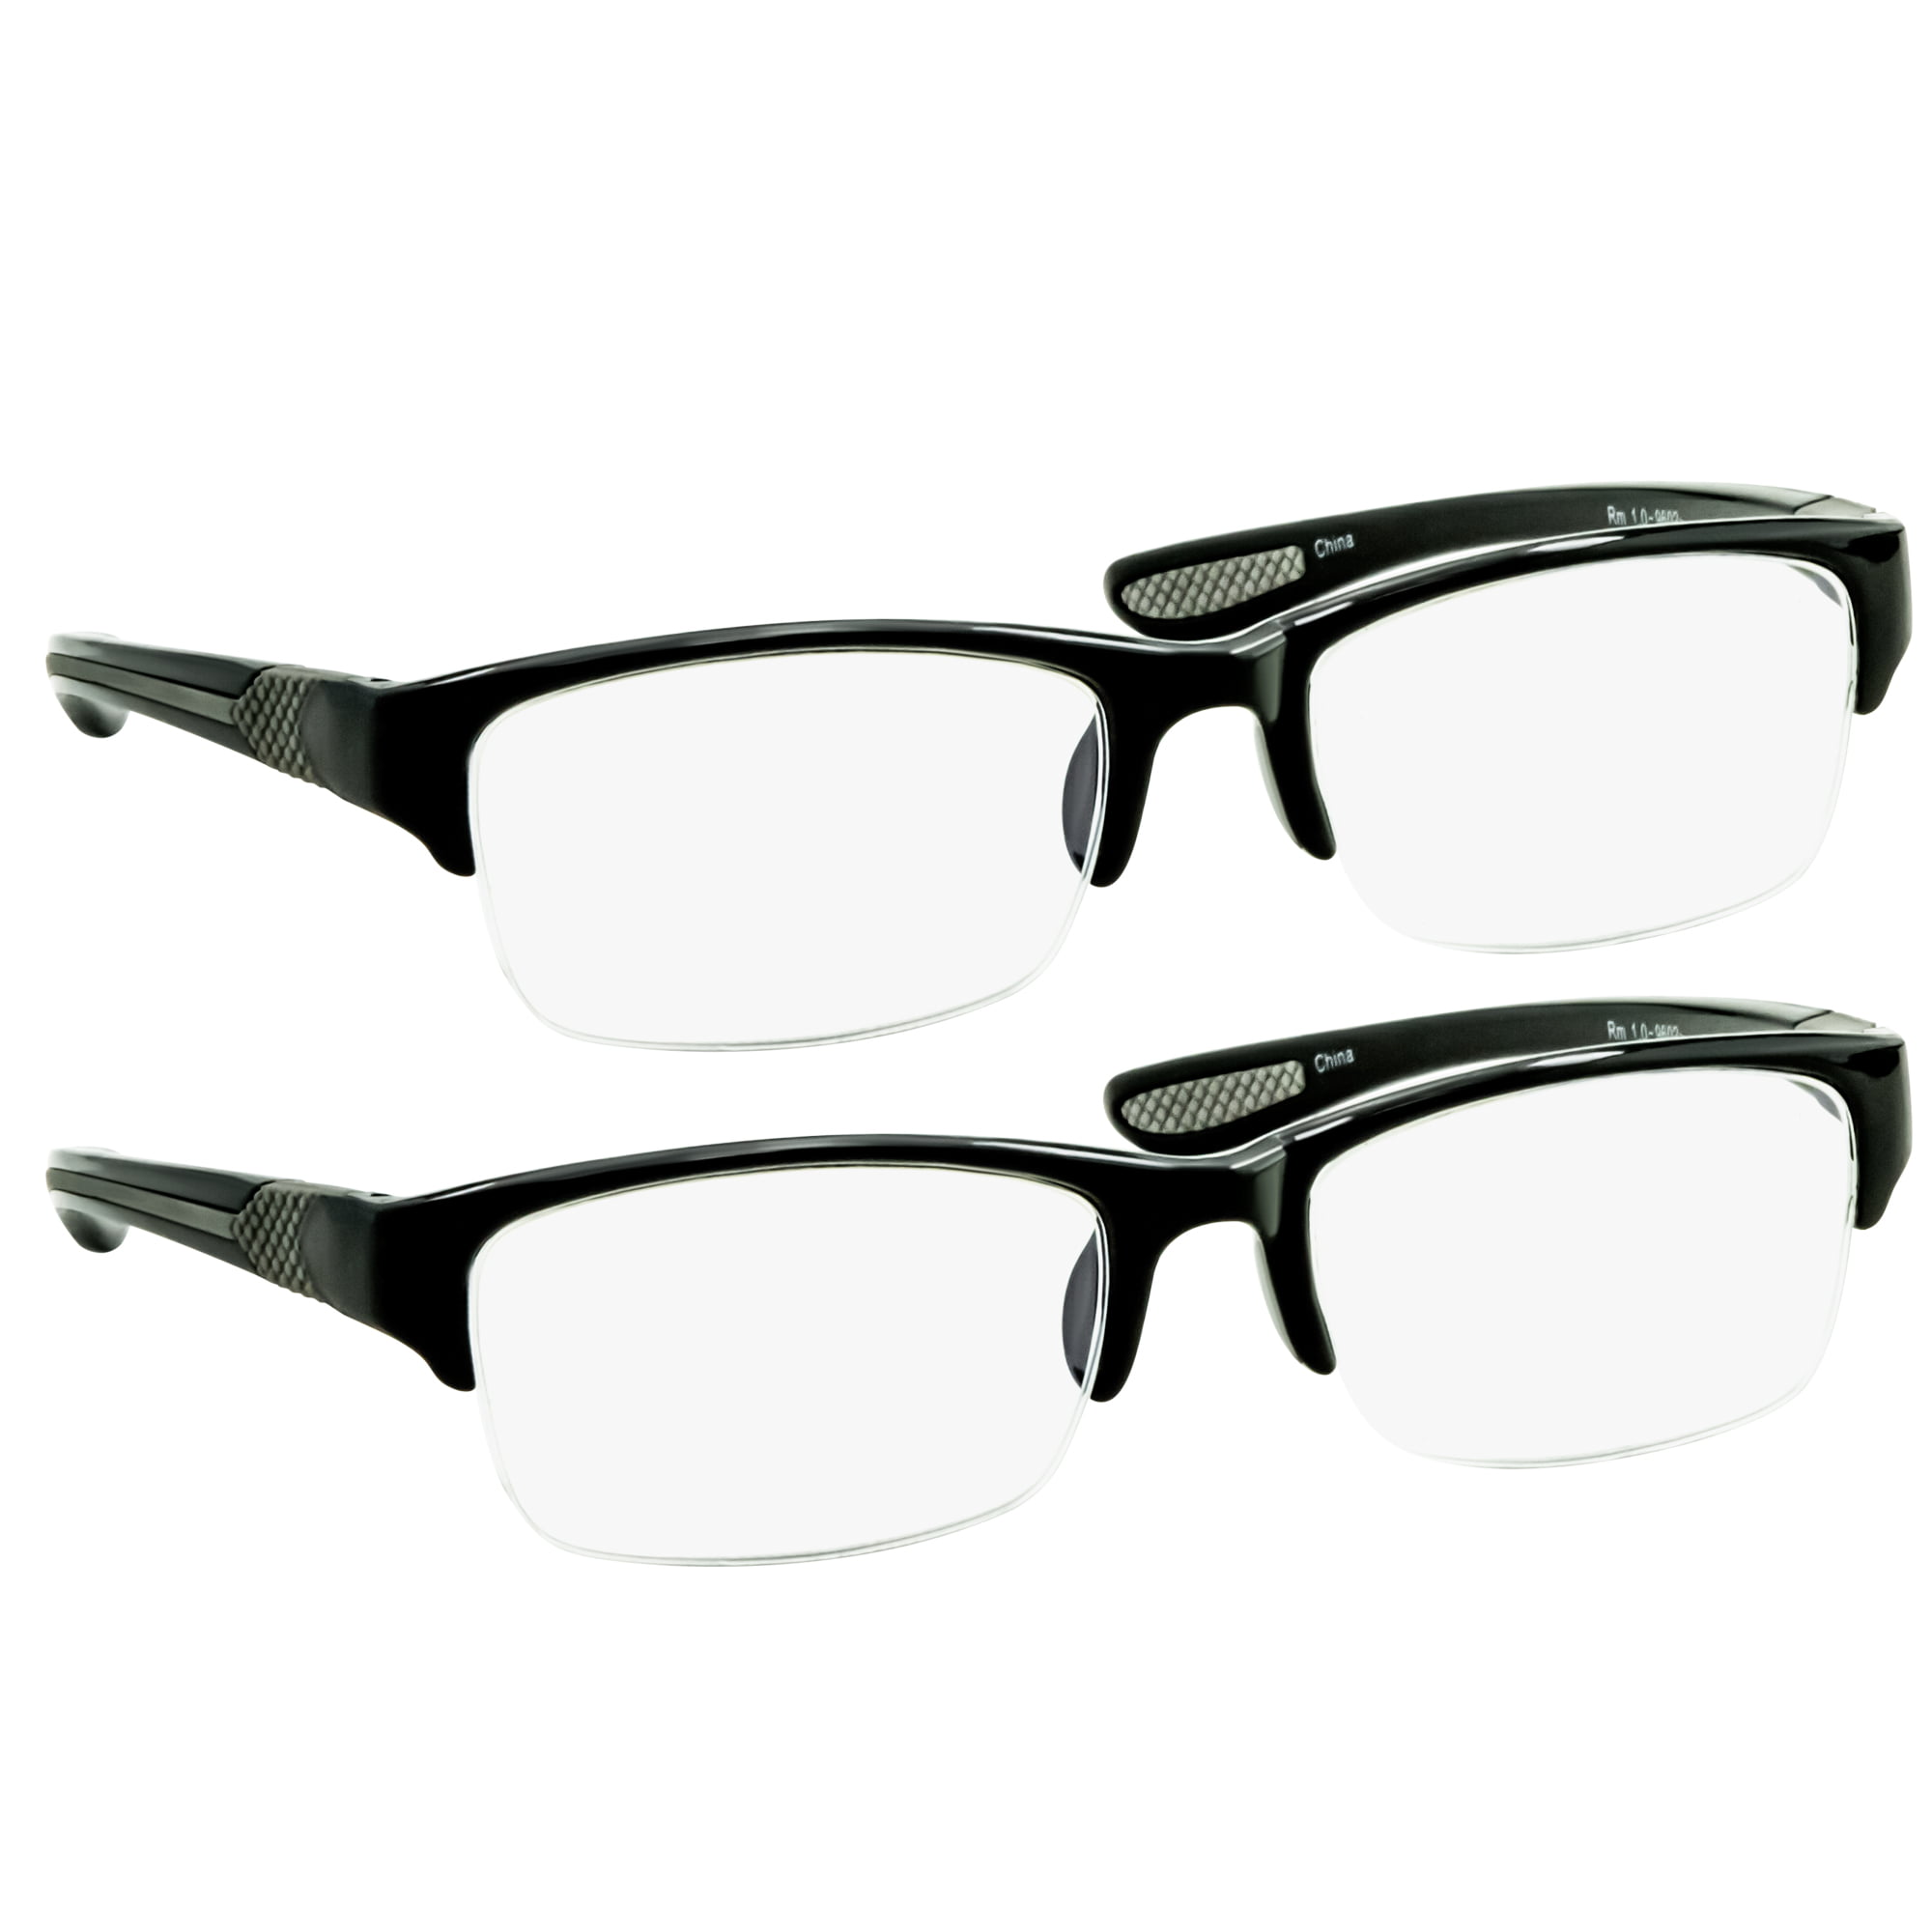 Очки 2 мужские купить. Очки для компьютера. Очки +1.75. Очки -2.00. Mens Reader Glasses +3.00r.